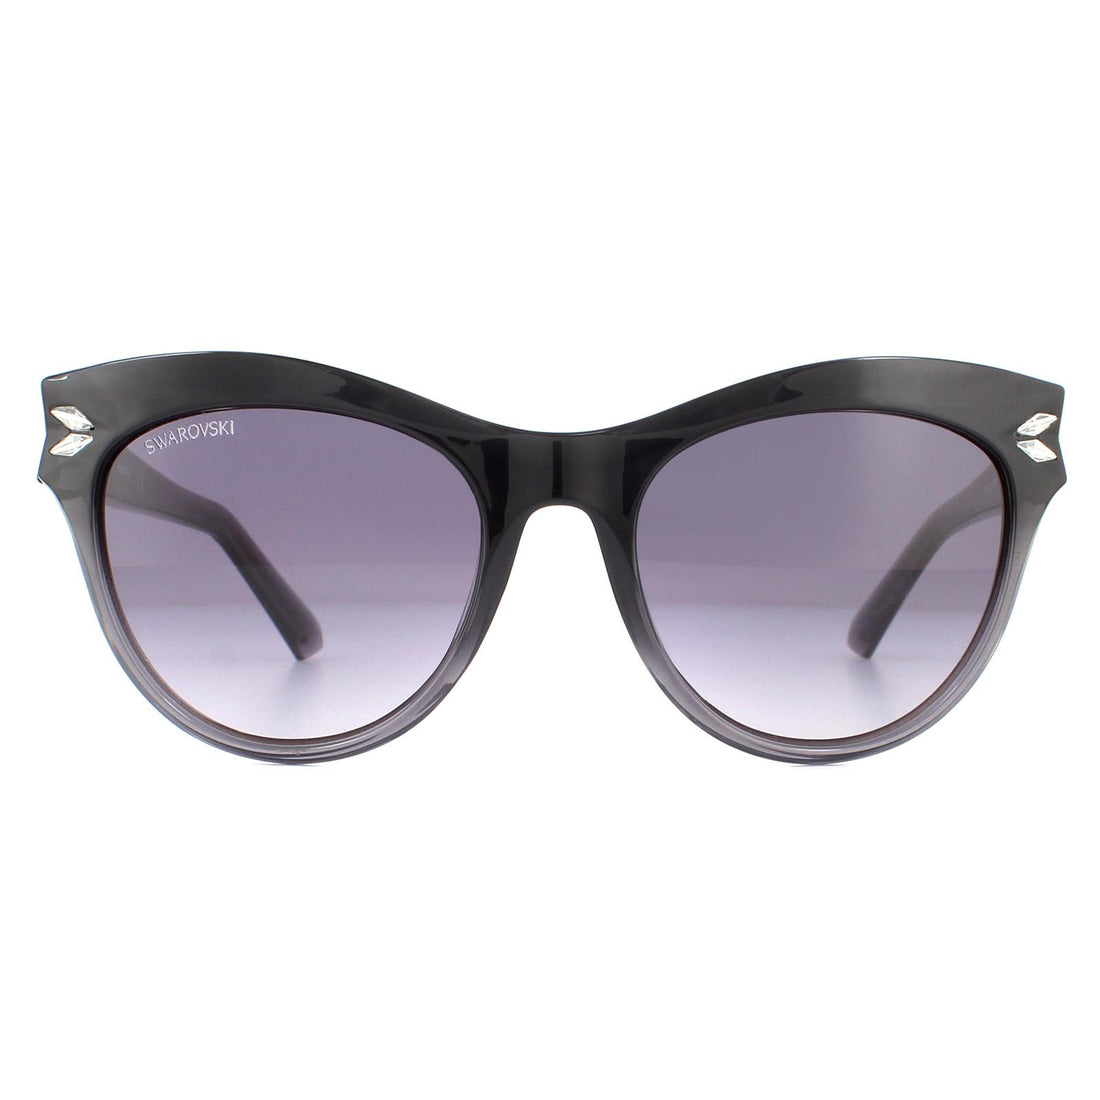 Swarovski SK0171 Sunglasses Black / Grey Gradient